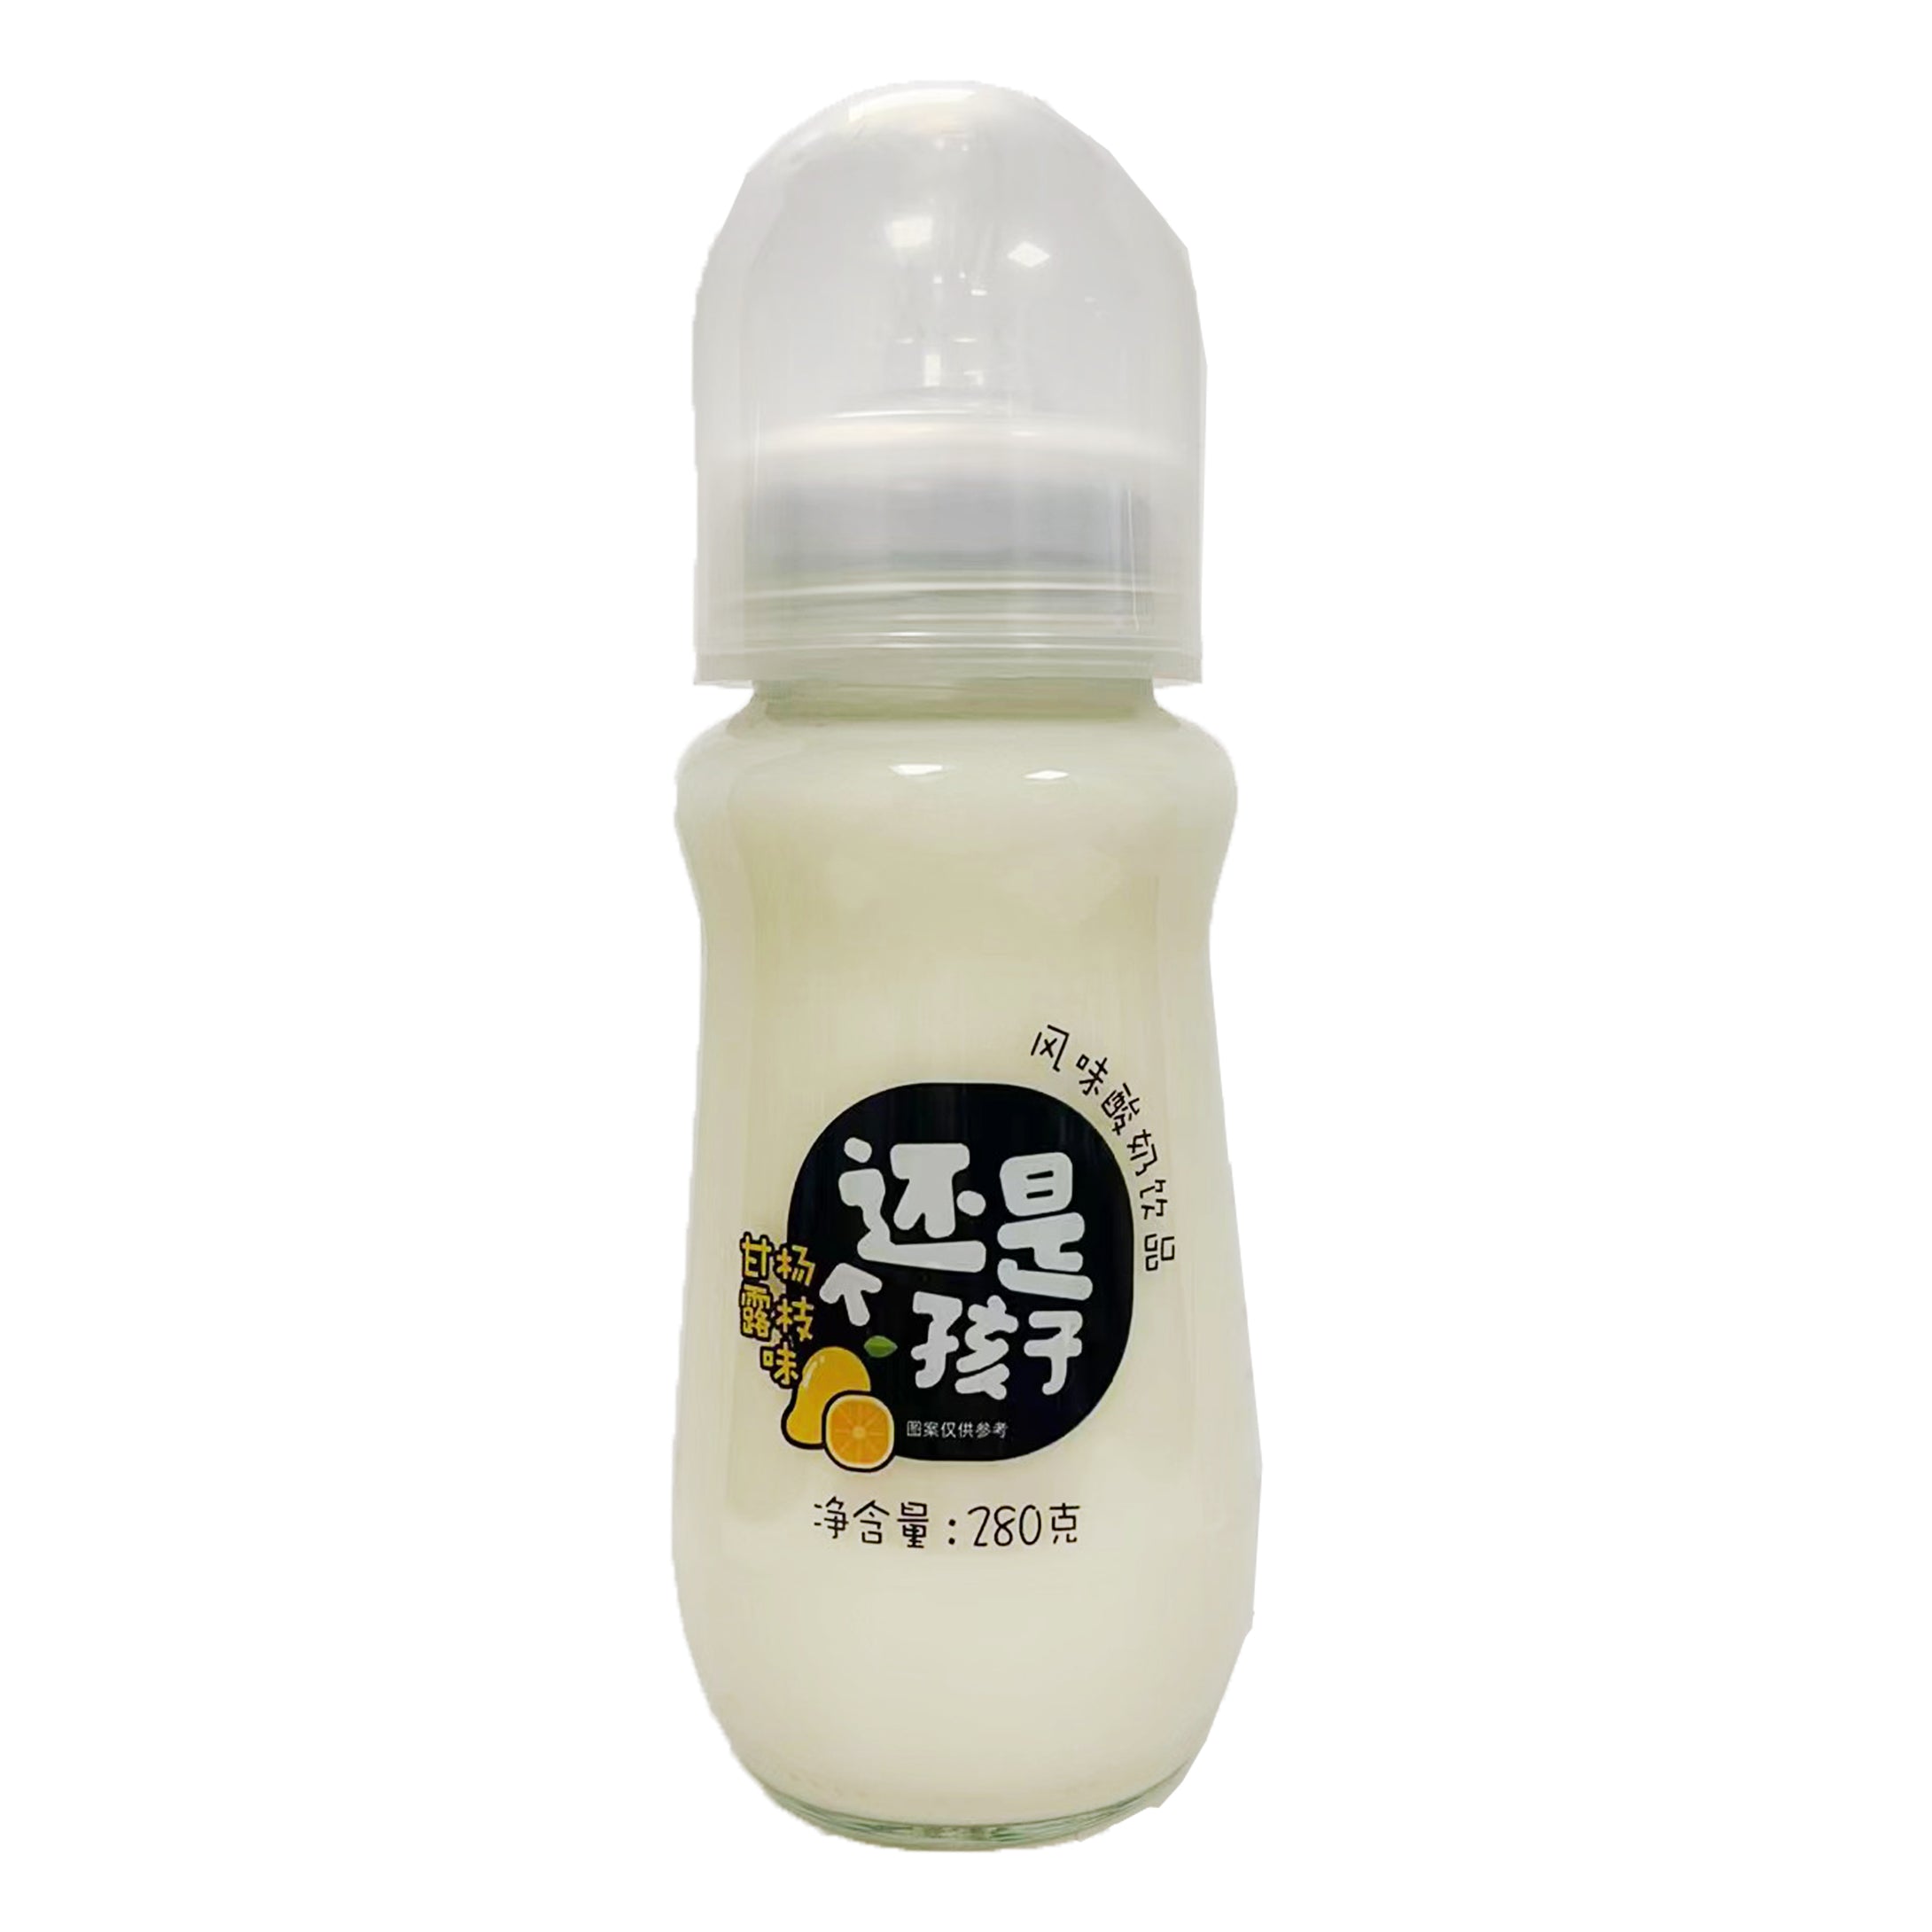 Mei Ri Yi Qing Yogurt  Mango Pomelo Sago Flavour 280g~ 每日亿轻 风味酸奶 杨枝甘露味 280g